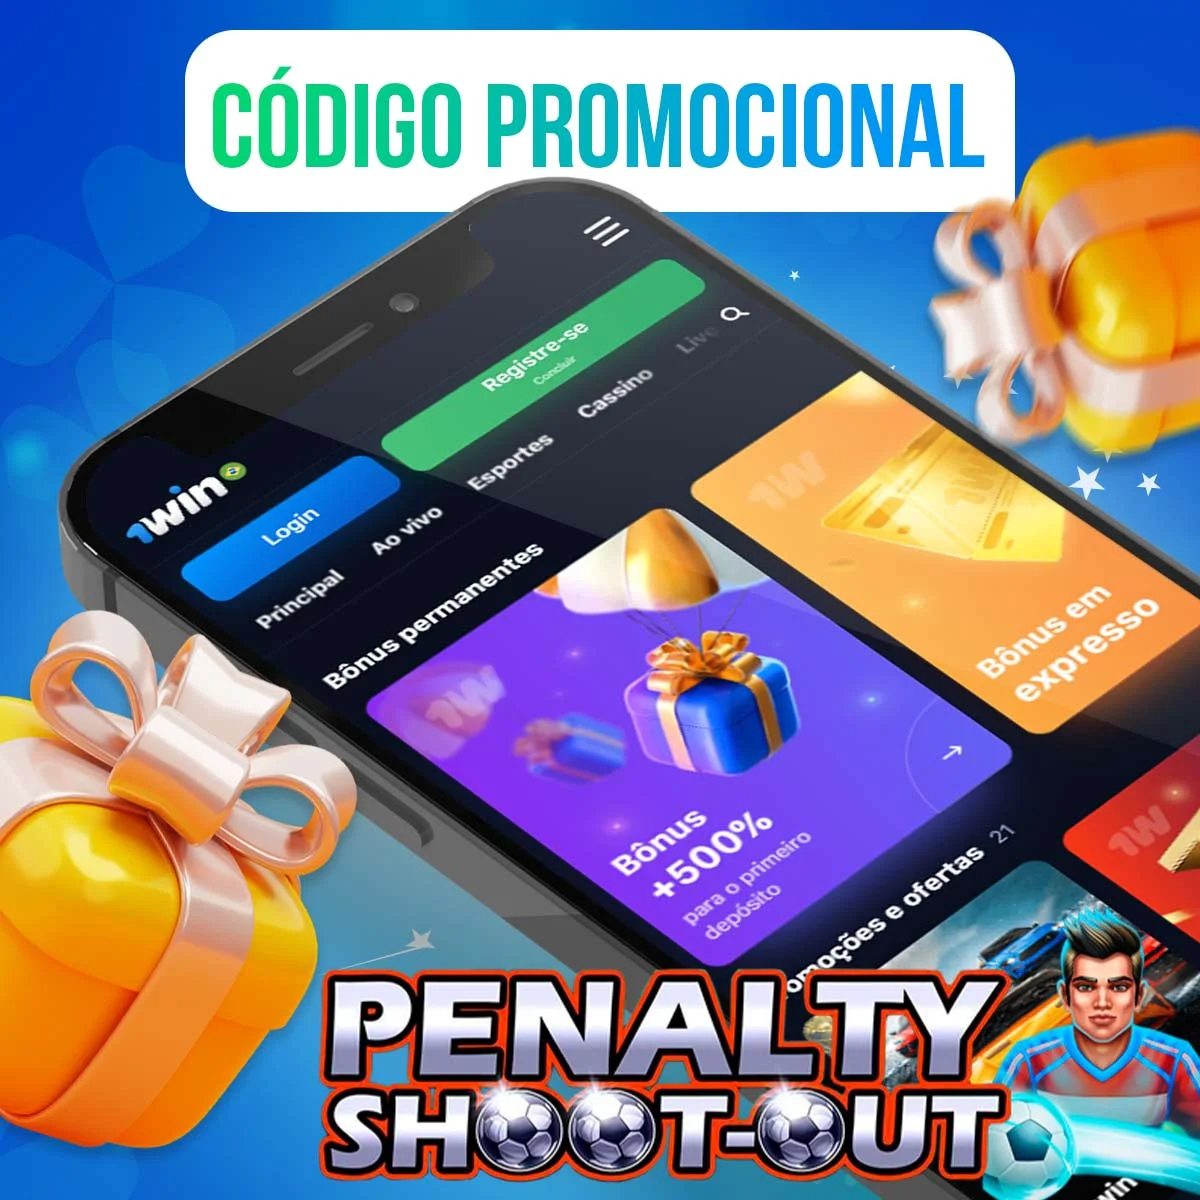 Sobre o código promocional 1Win Penalty Shootout